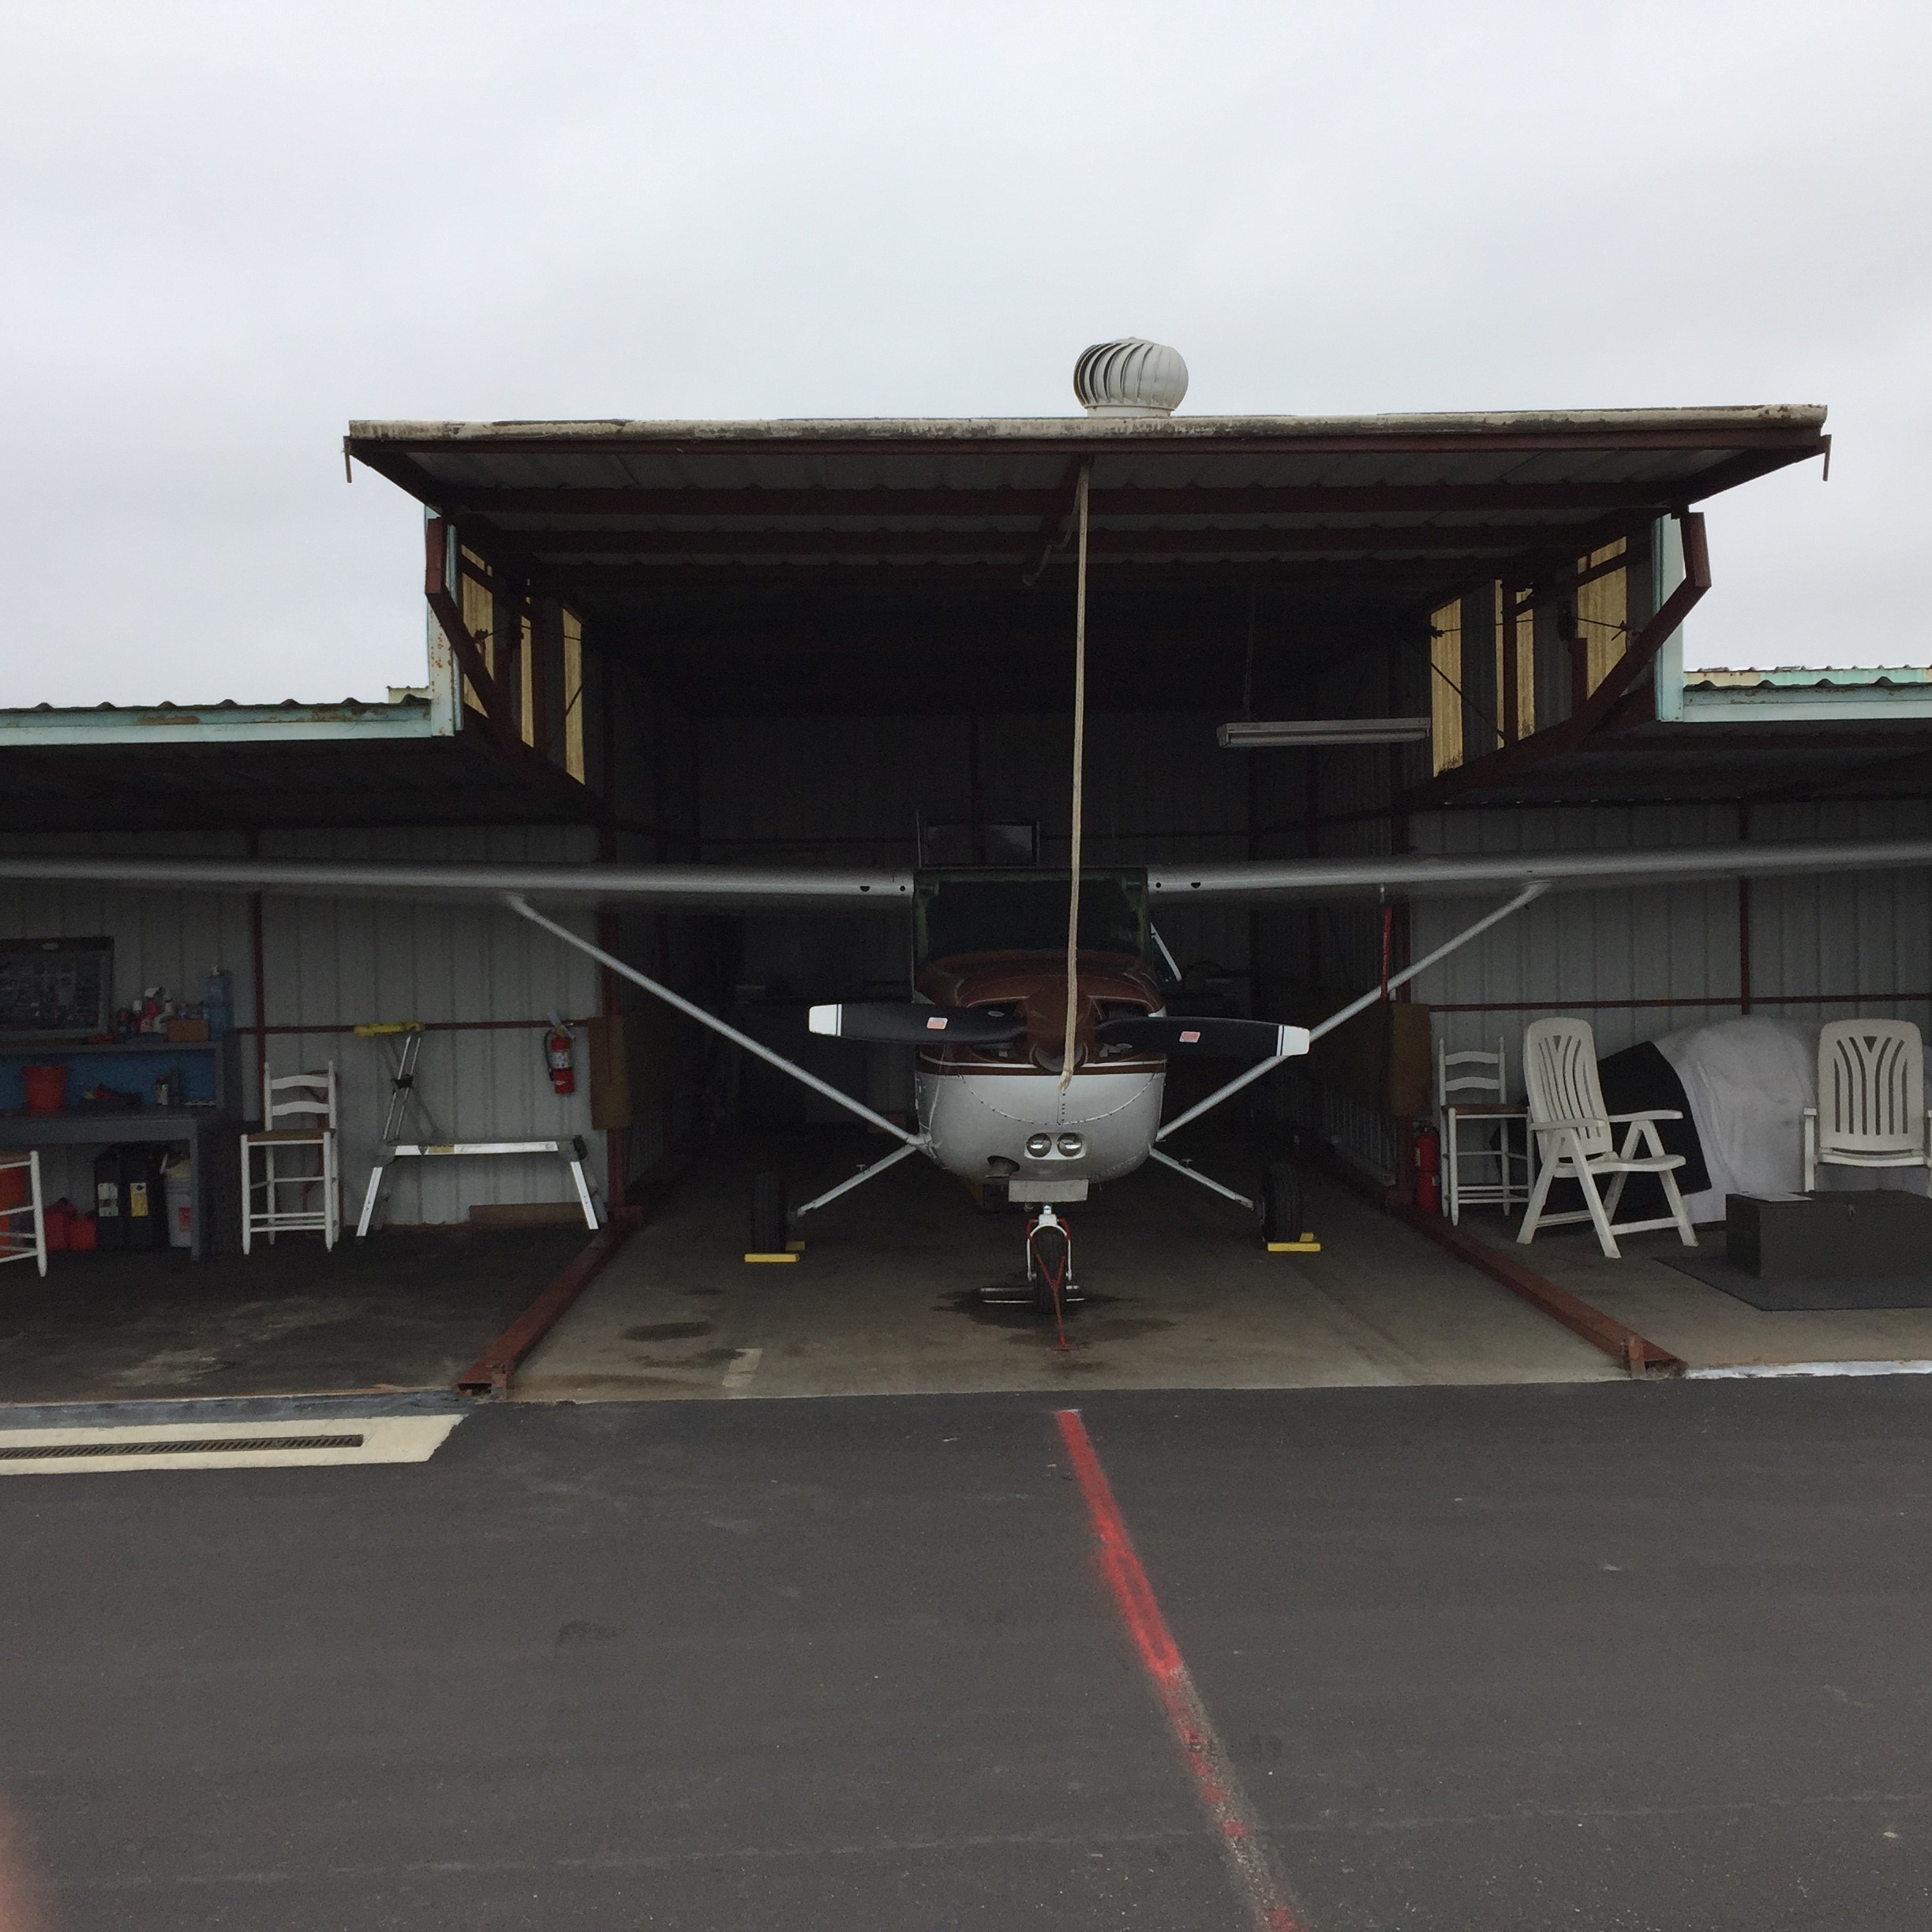 Oxnard_Hangar_Front_View_with_Cessna_172.jpg